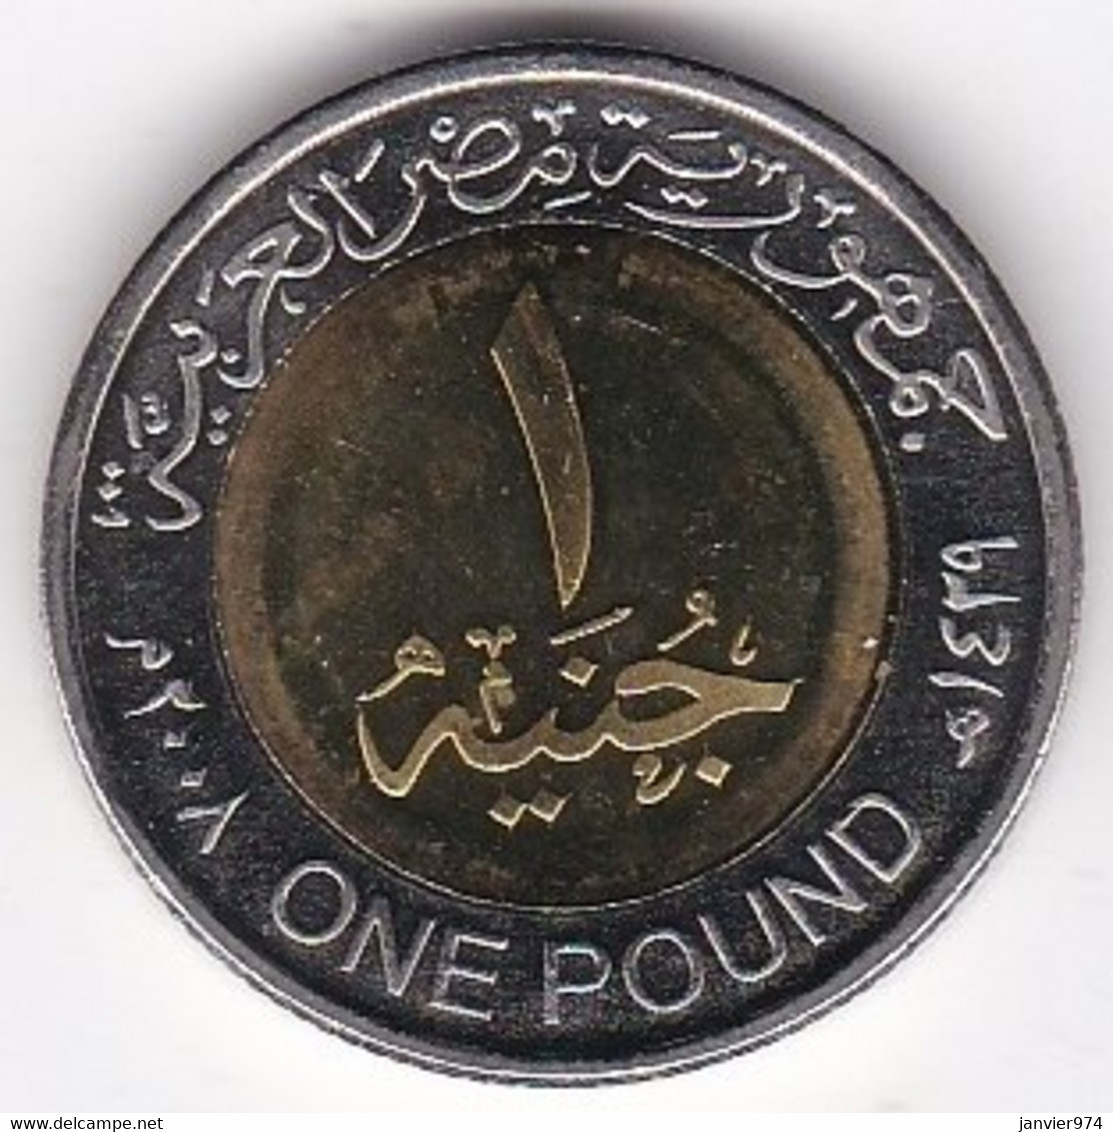 Egypte, 1 Pound AH 1429 – 2008, Masque Funéraire De Toutankhamon, Bimétallique, KM# 940a , Neuve UNC - Aegypten